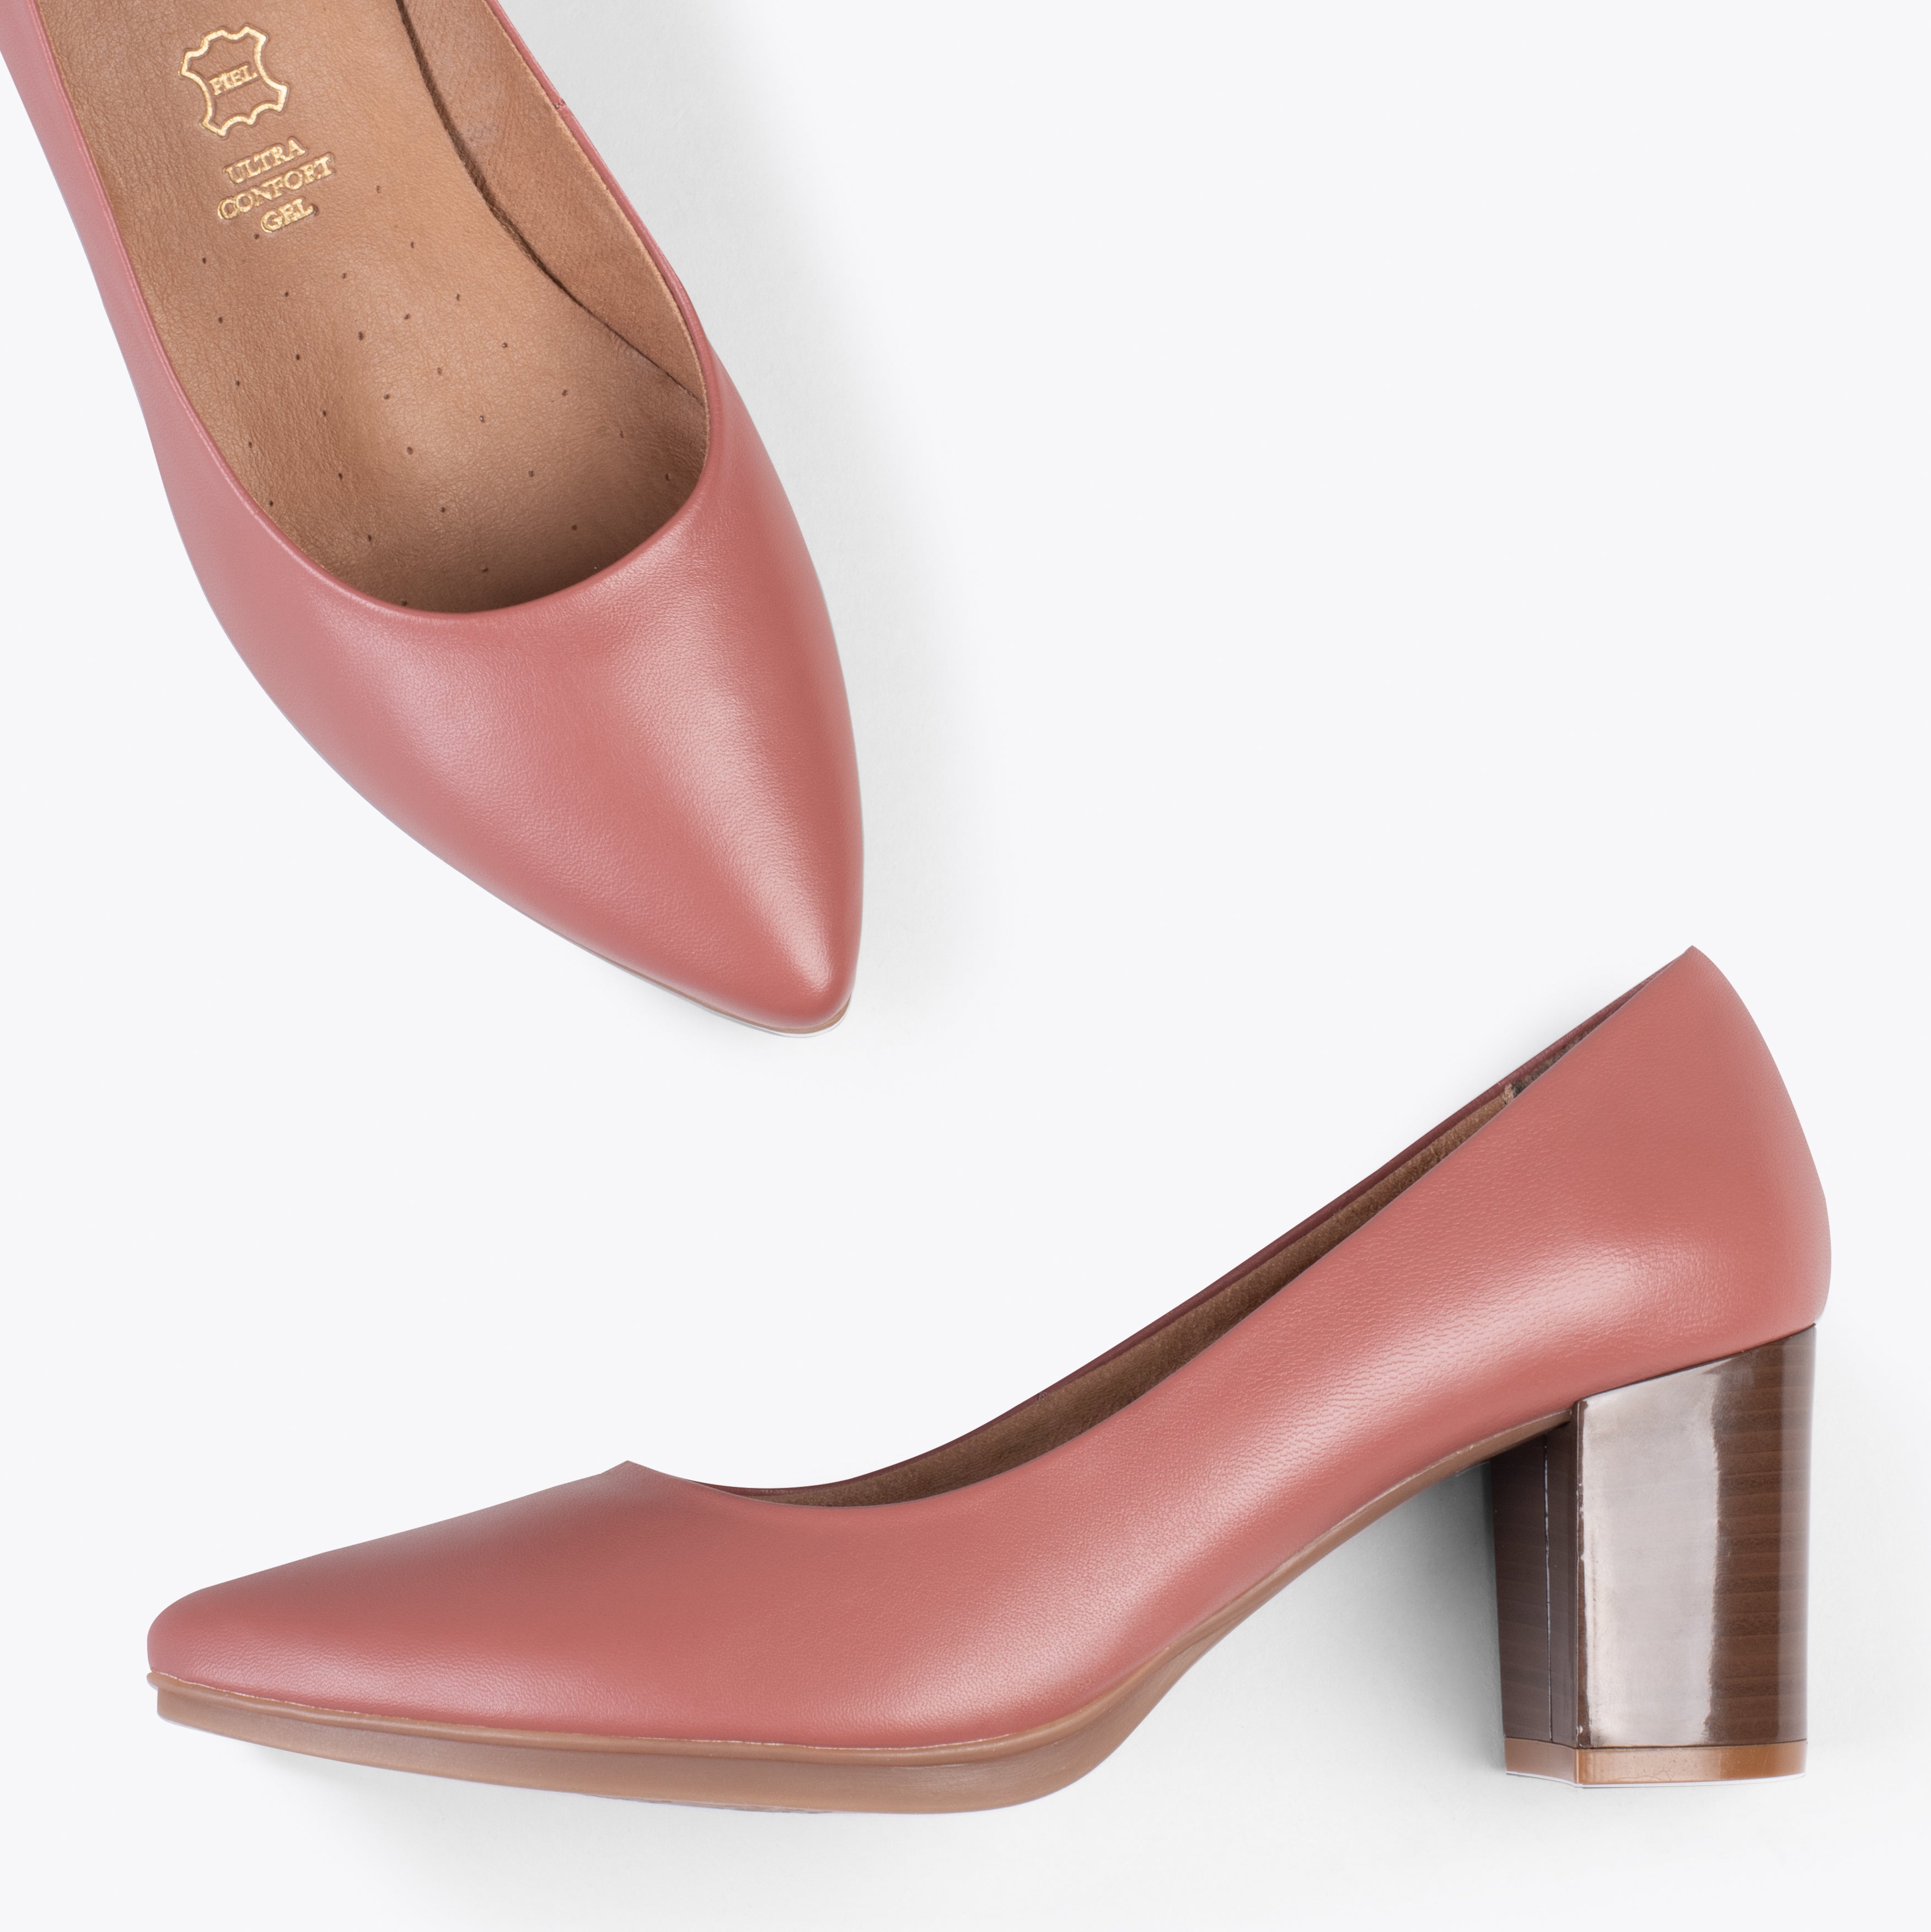 URBAN S SALON – Zapatos de tacón medio de napa NEGRO  Zapatos de tacón  medio, Zapatos de piel, Zapatos comodos mujer